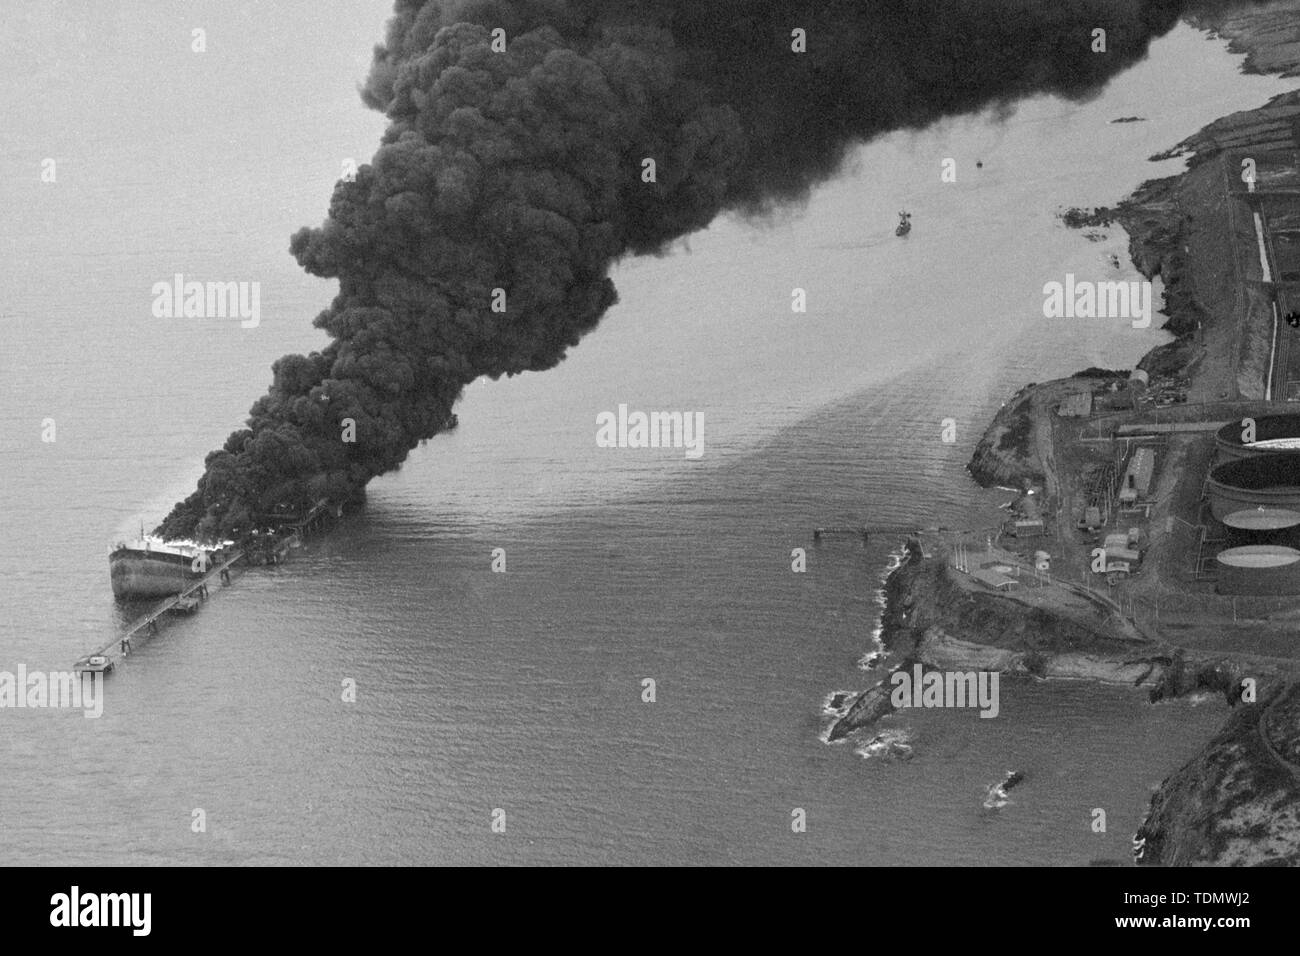 Il fumo si riversa dal parzialmente sommerso relitto della petroliera francese Betelgeuse, che era lacerata, lunedì 8 gennaio da una serie di esplosioni come ella era scarico 120.000 tonnellate di petrolio greggio al petrolio del Golfo terminale nella Baia di Bantry, Irlanda. Cinquanta persone sono morte - tra cui 43 dell' equipaggio del 60.000-ton tanker. Foto Stock